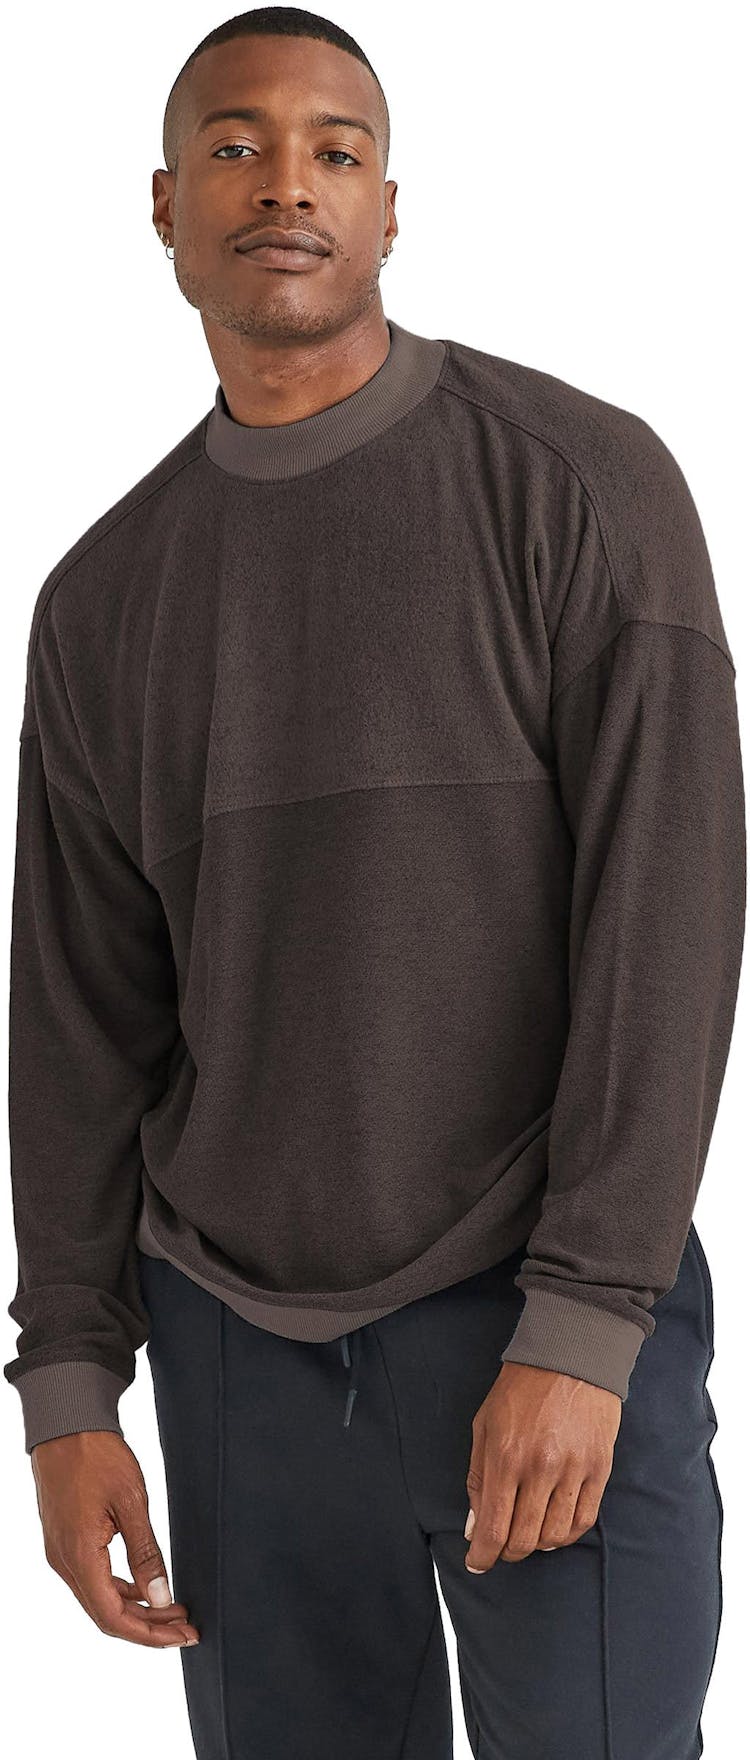 Numéro de l'image de la galerie de produits 4 pour le produit Chandail à manches longues en tricot douillet - Homme